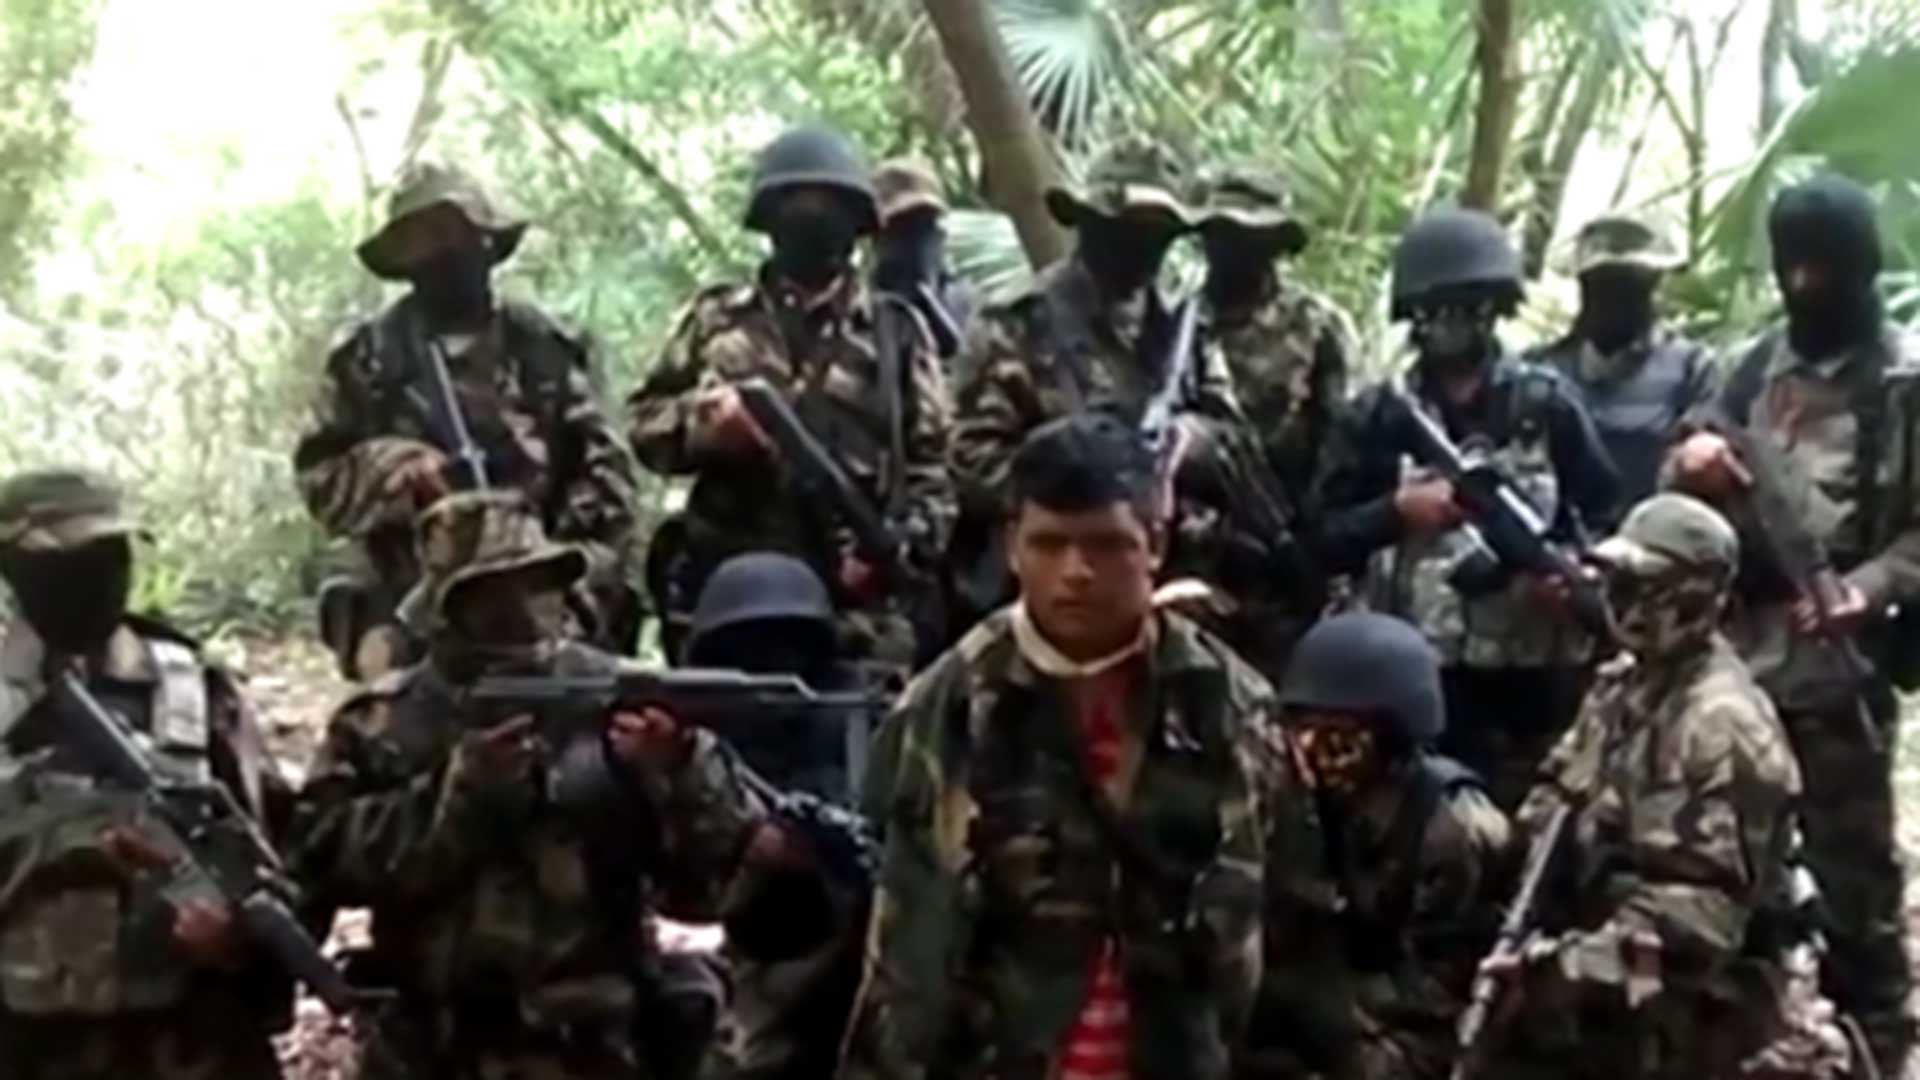 Miembros del cártel mexicano Los Zetas